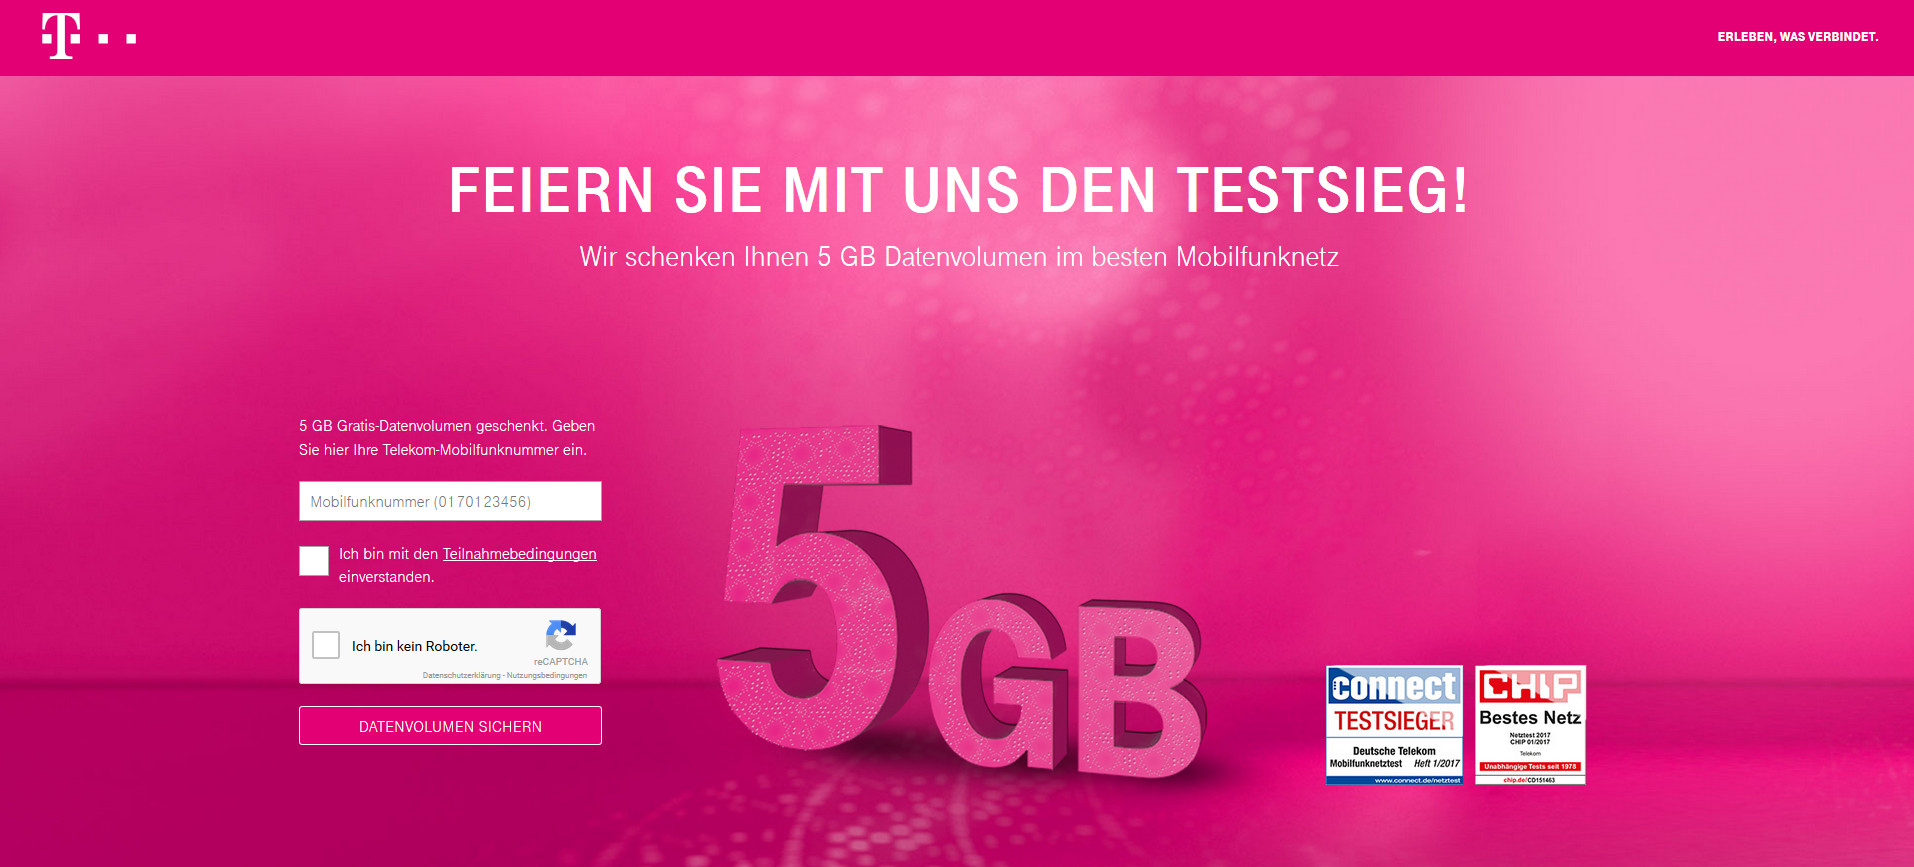 Telekom Aufmerksamkeit Geschenke
 Für Telekom Kunden 5 GB Datenvolumen geschenkt